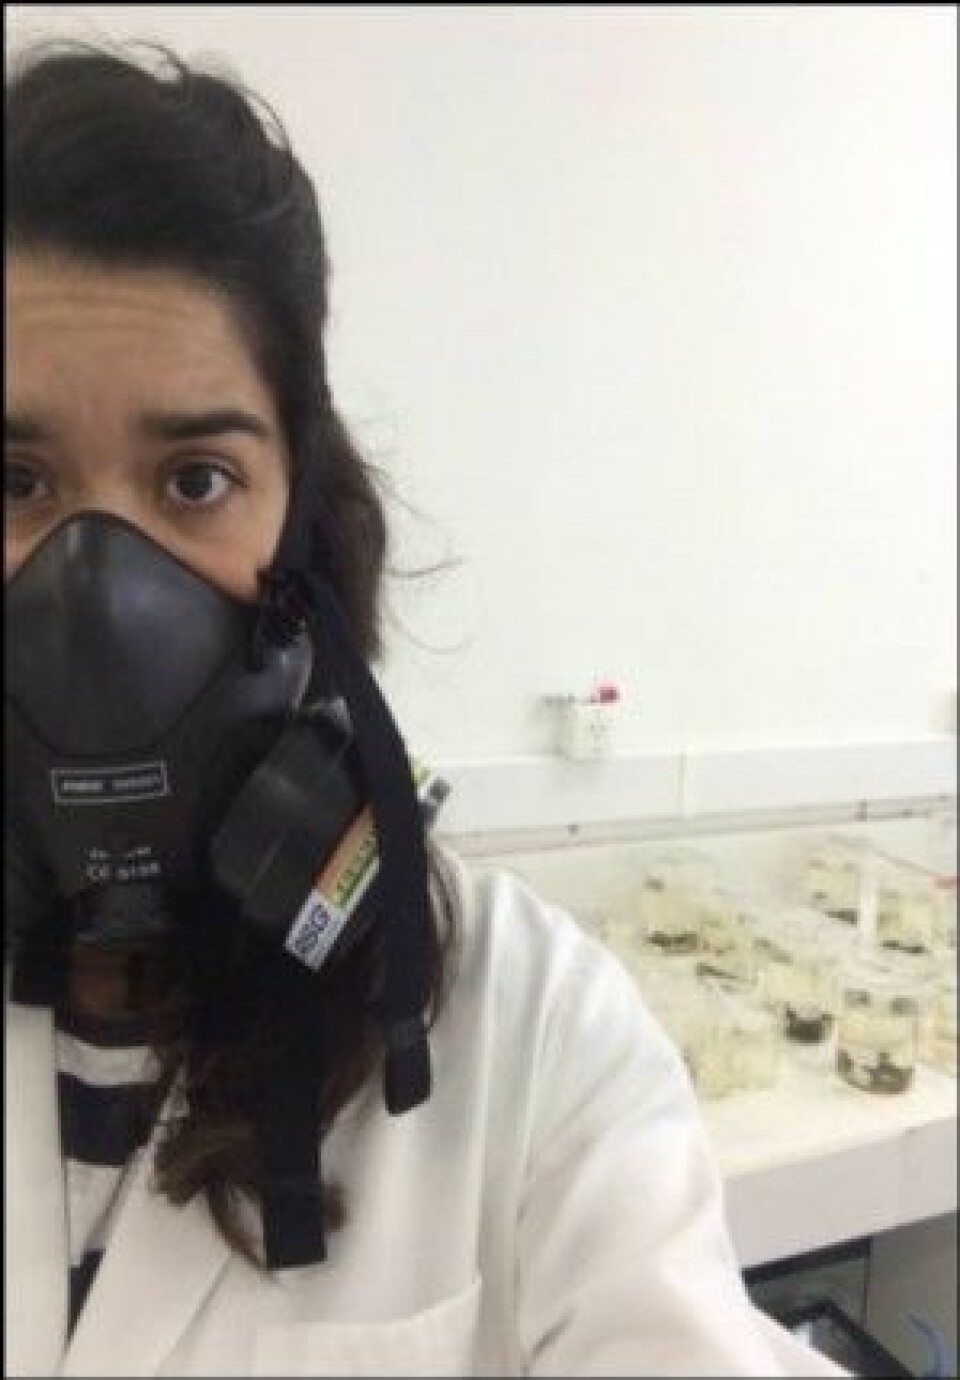 Adriana Sardi måtte bruke gassmaske på laboratoriet så hun ikke fikk i seg giftige gasser fra oljen i prøvene. (Foto: Privat)